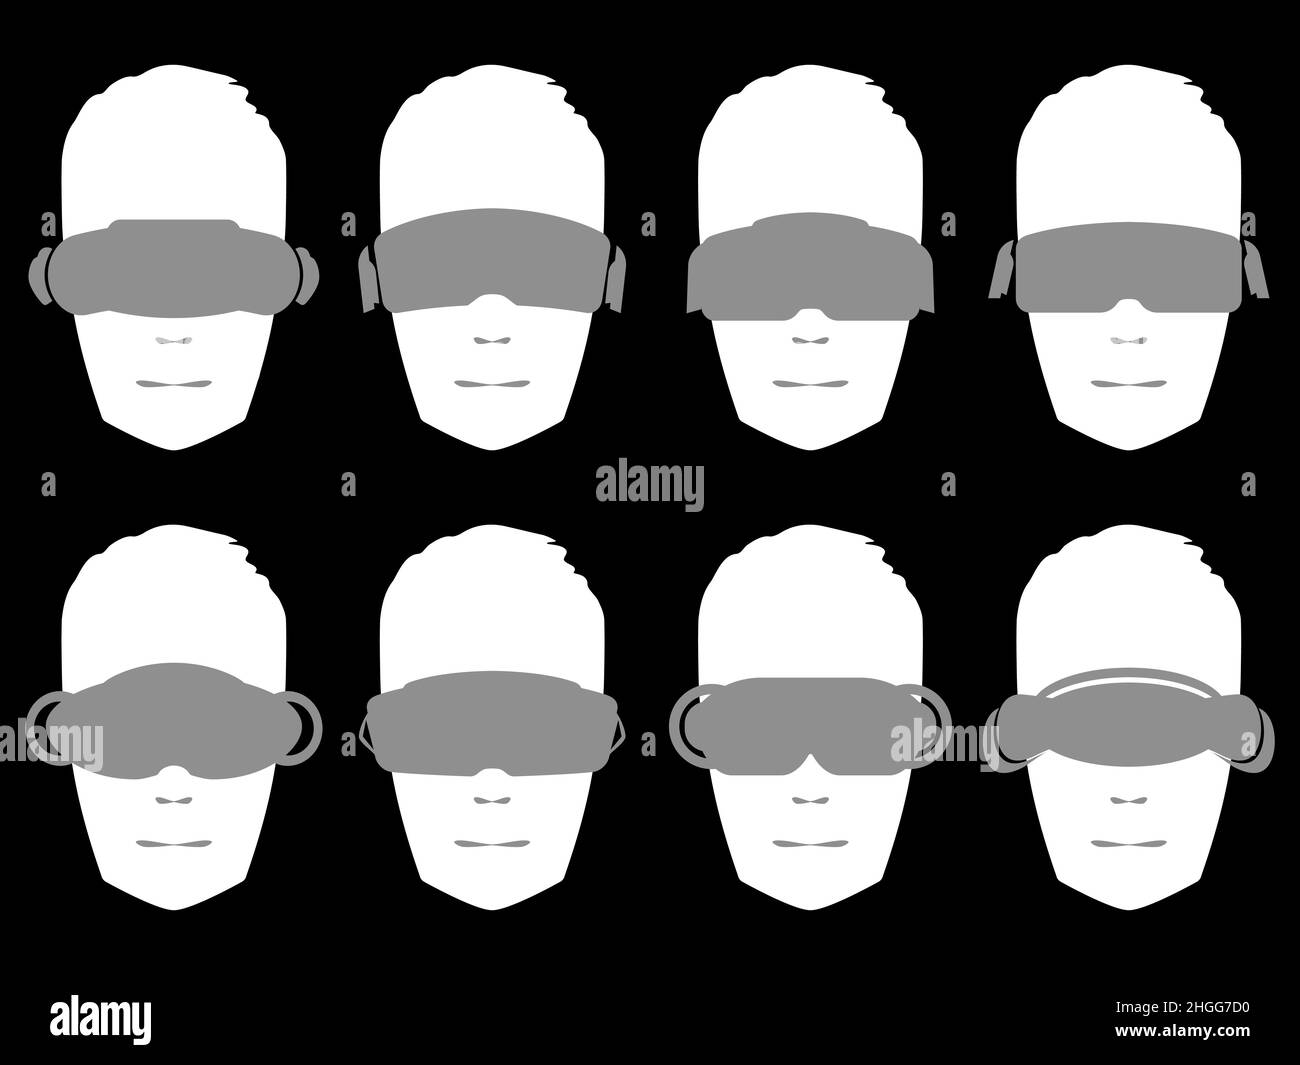 Weiße Silhouette eines Kopfes in einer Virtual-Reality-Brille, eine Reihe von Symbolen auf schwarzem Hintergrund isoliert. Menschliches Gesicht im VR-Headset. Virtual Reality-Glasse Stock Vektor